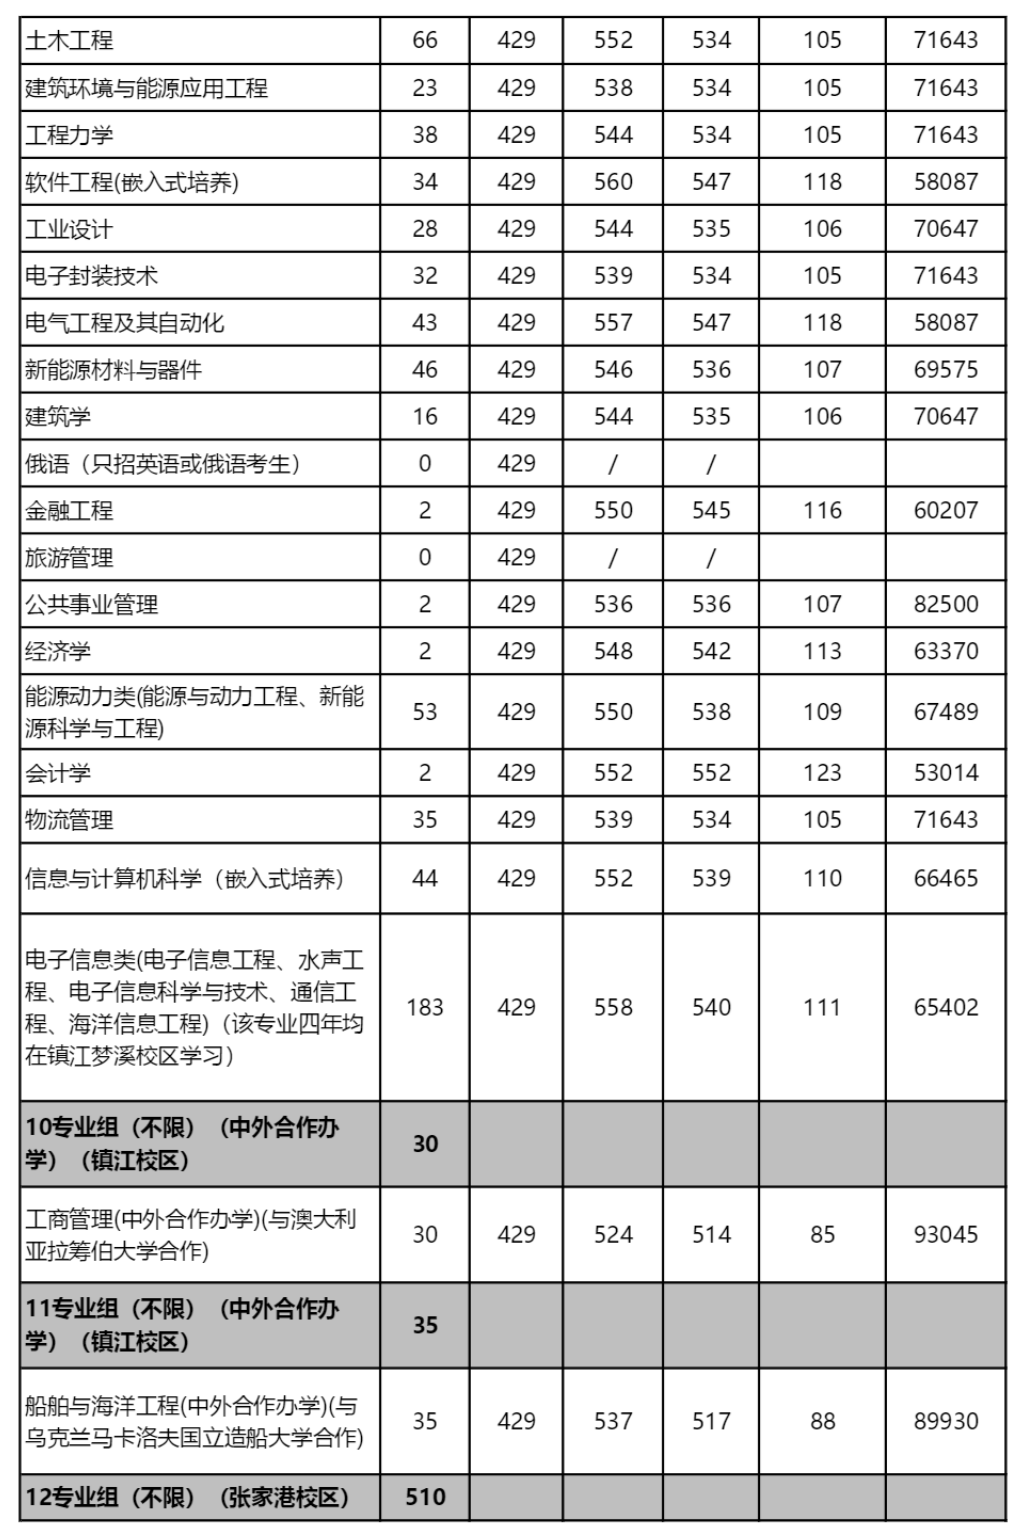 江苏科技大学2022年江苏省各专业录取分数线及排名